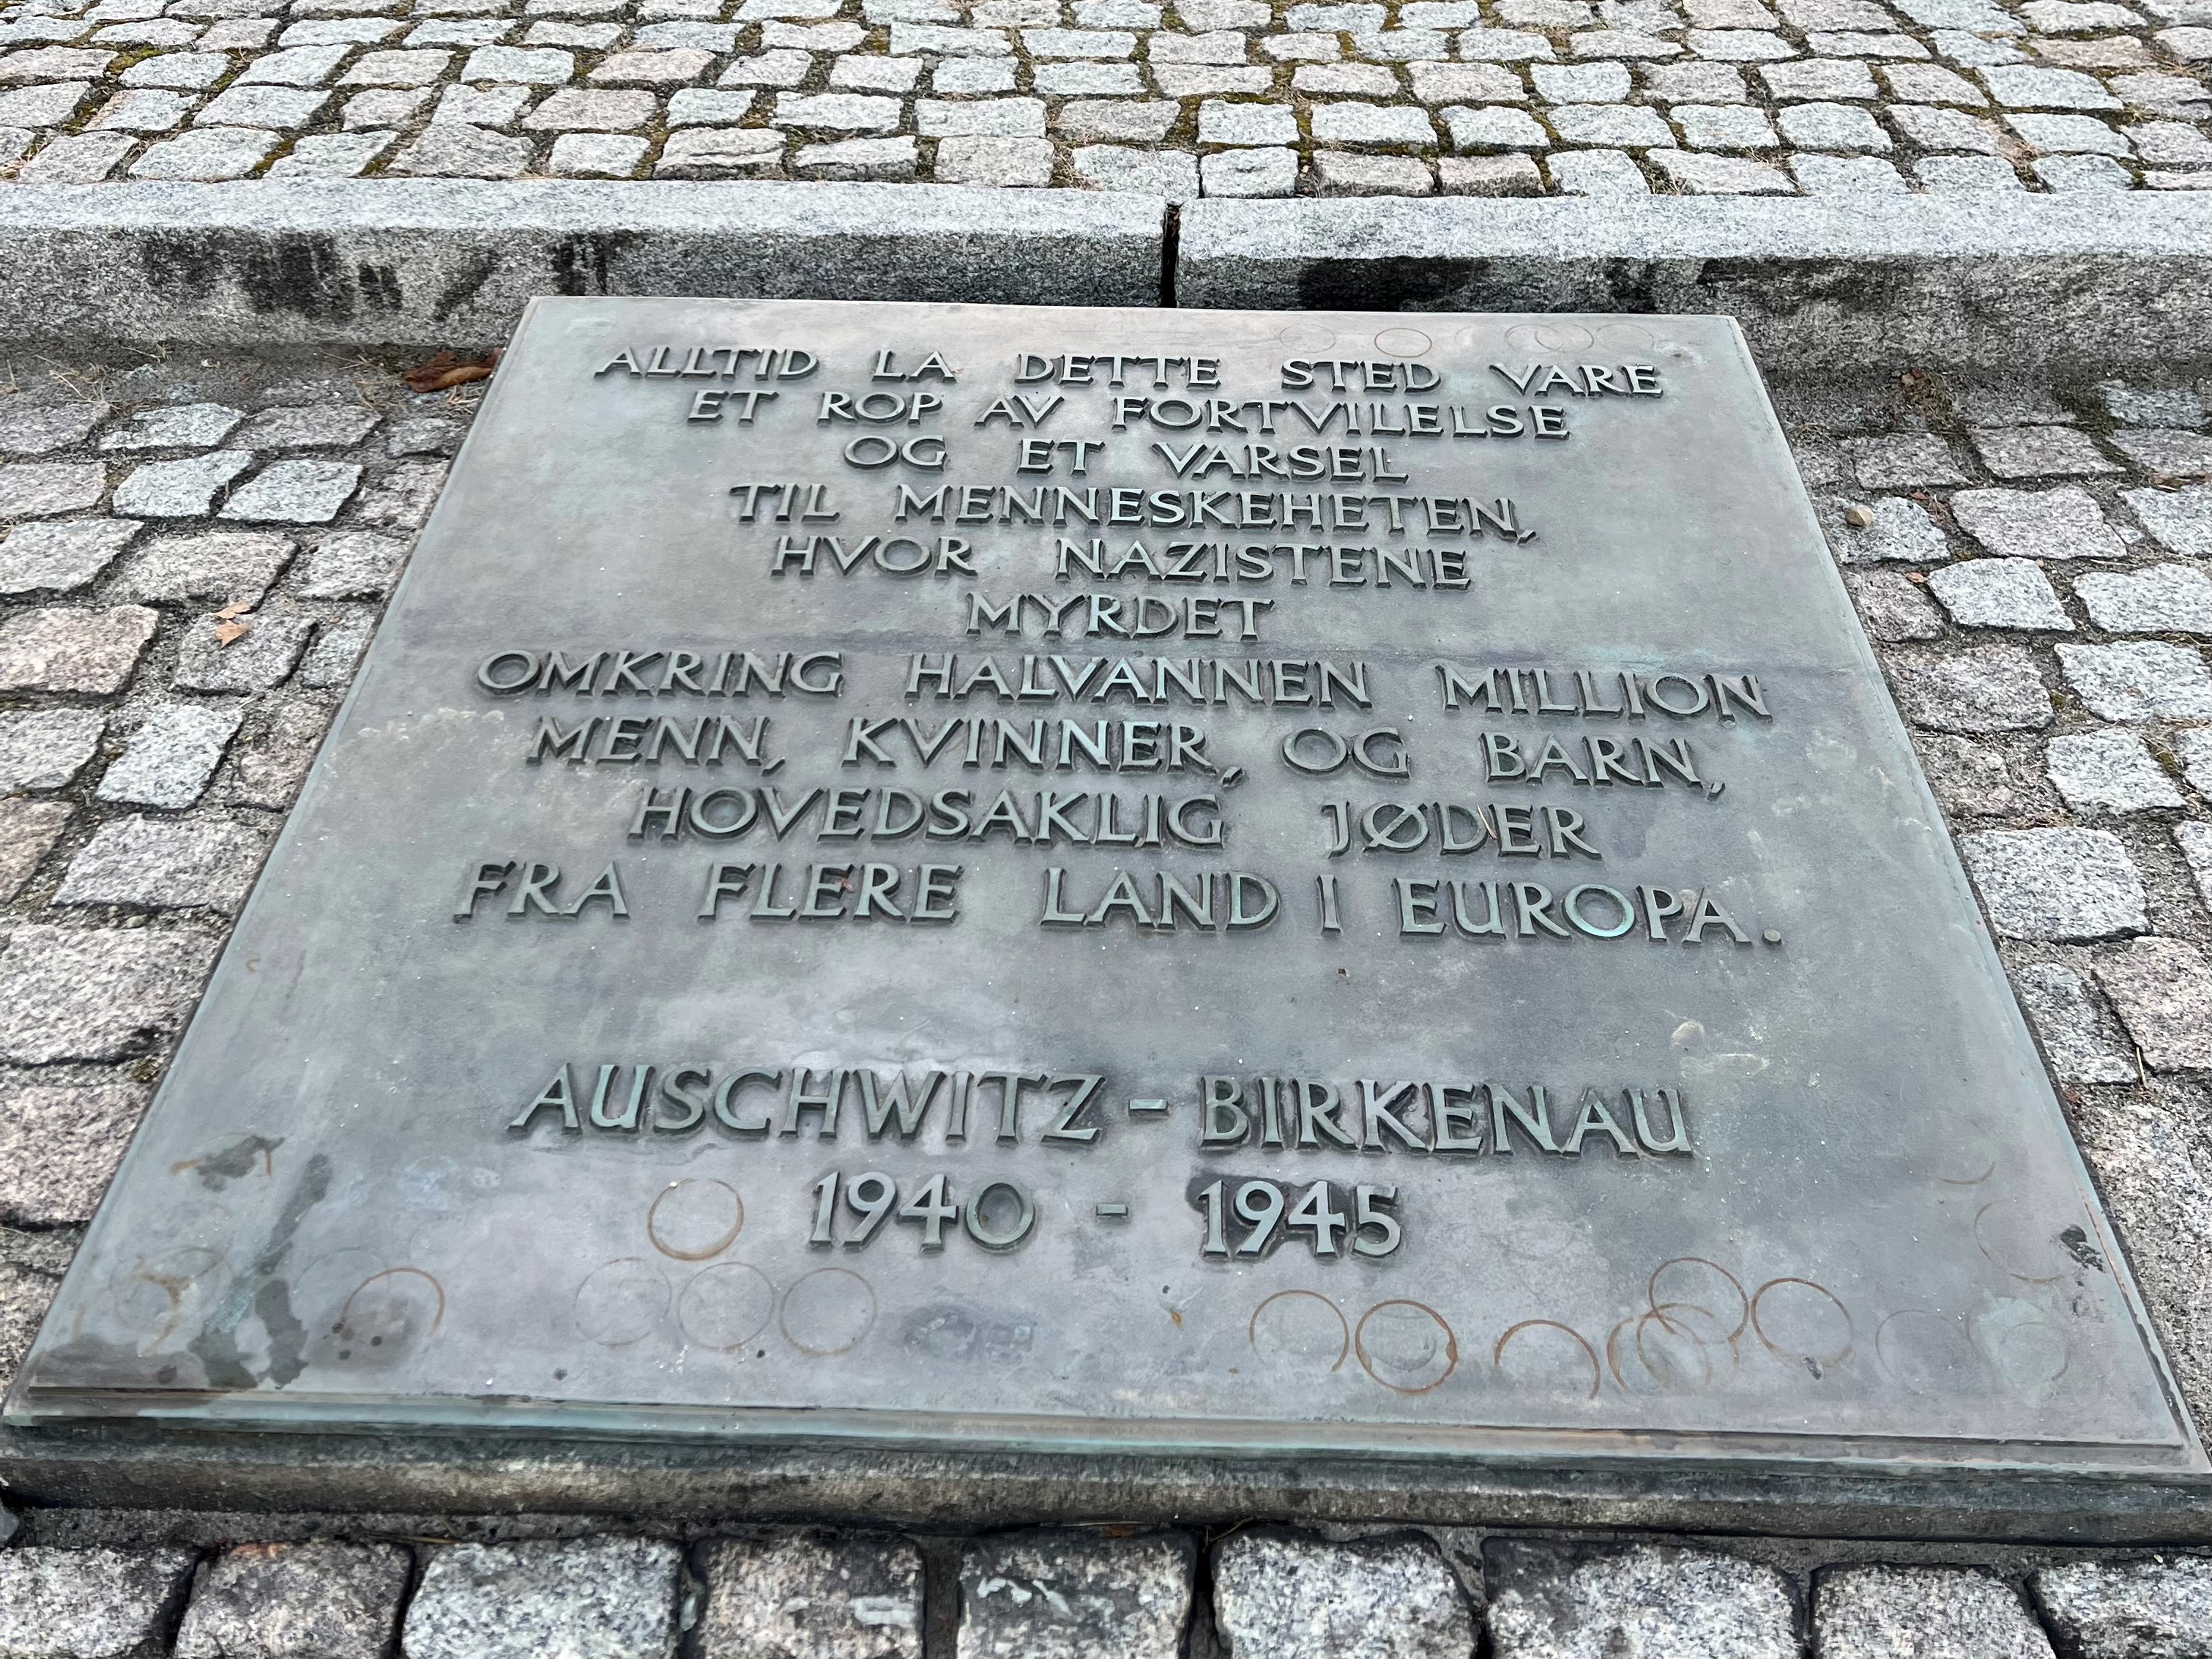 Plakett med tekst: Alltid la dette sted være et rop av fortvilelse og et varsel til menneskeheten, hvor nazistene myrdet omkring halvannen million menn, kvinner, og barn, hovedsaklig jøder fra flere land i Europa. Auschwitz-Birkenau 1940-1945.